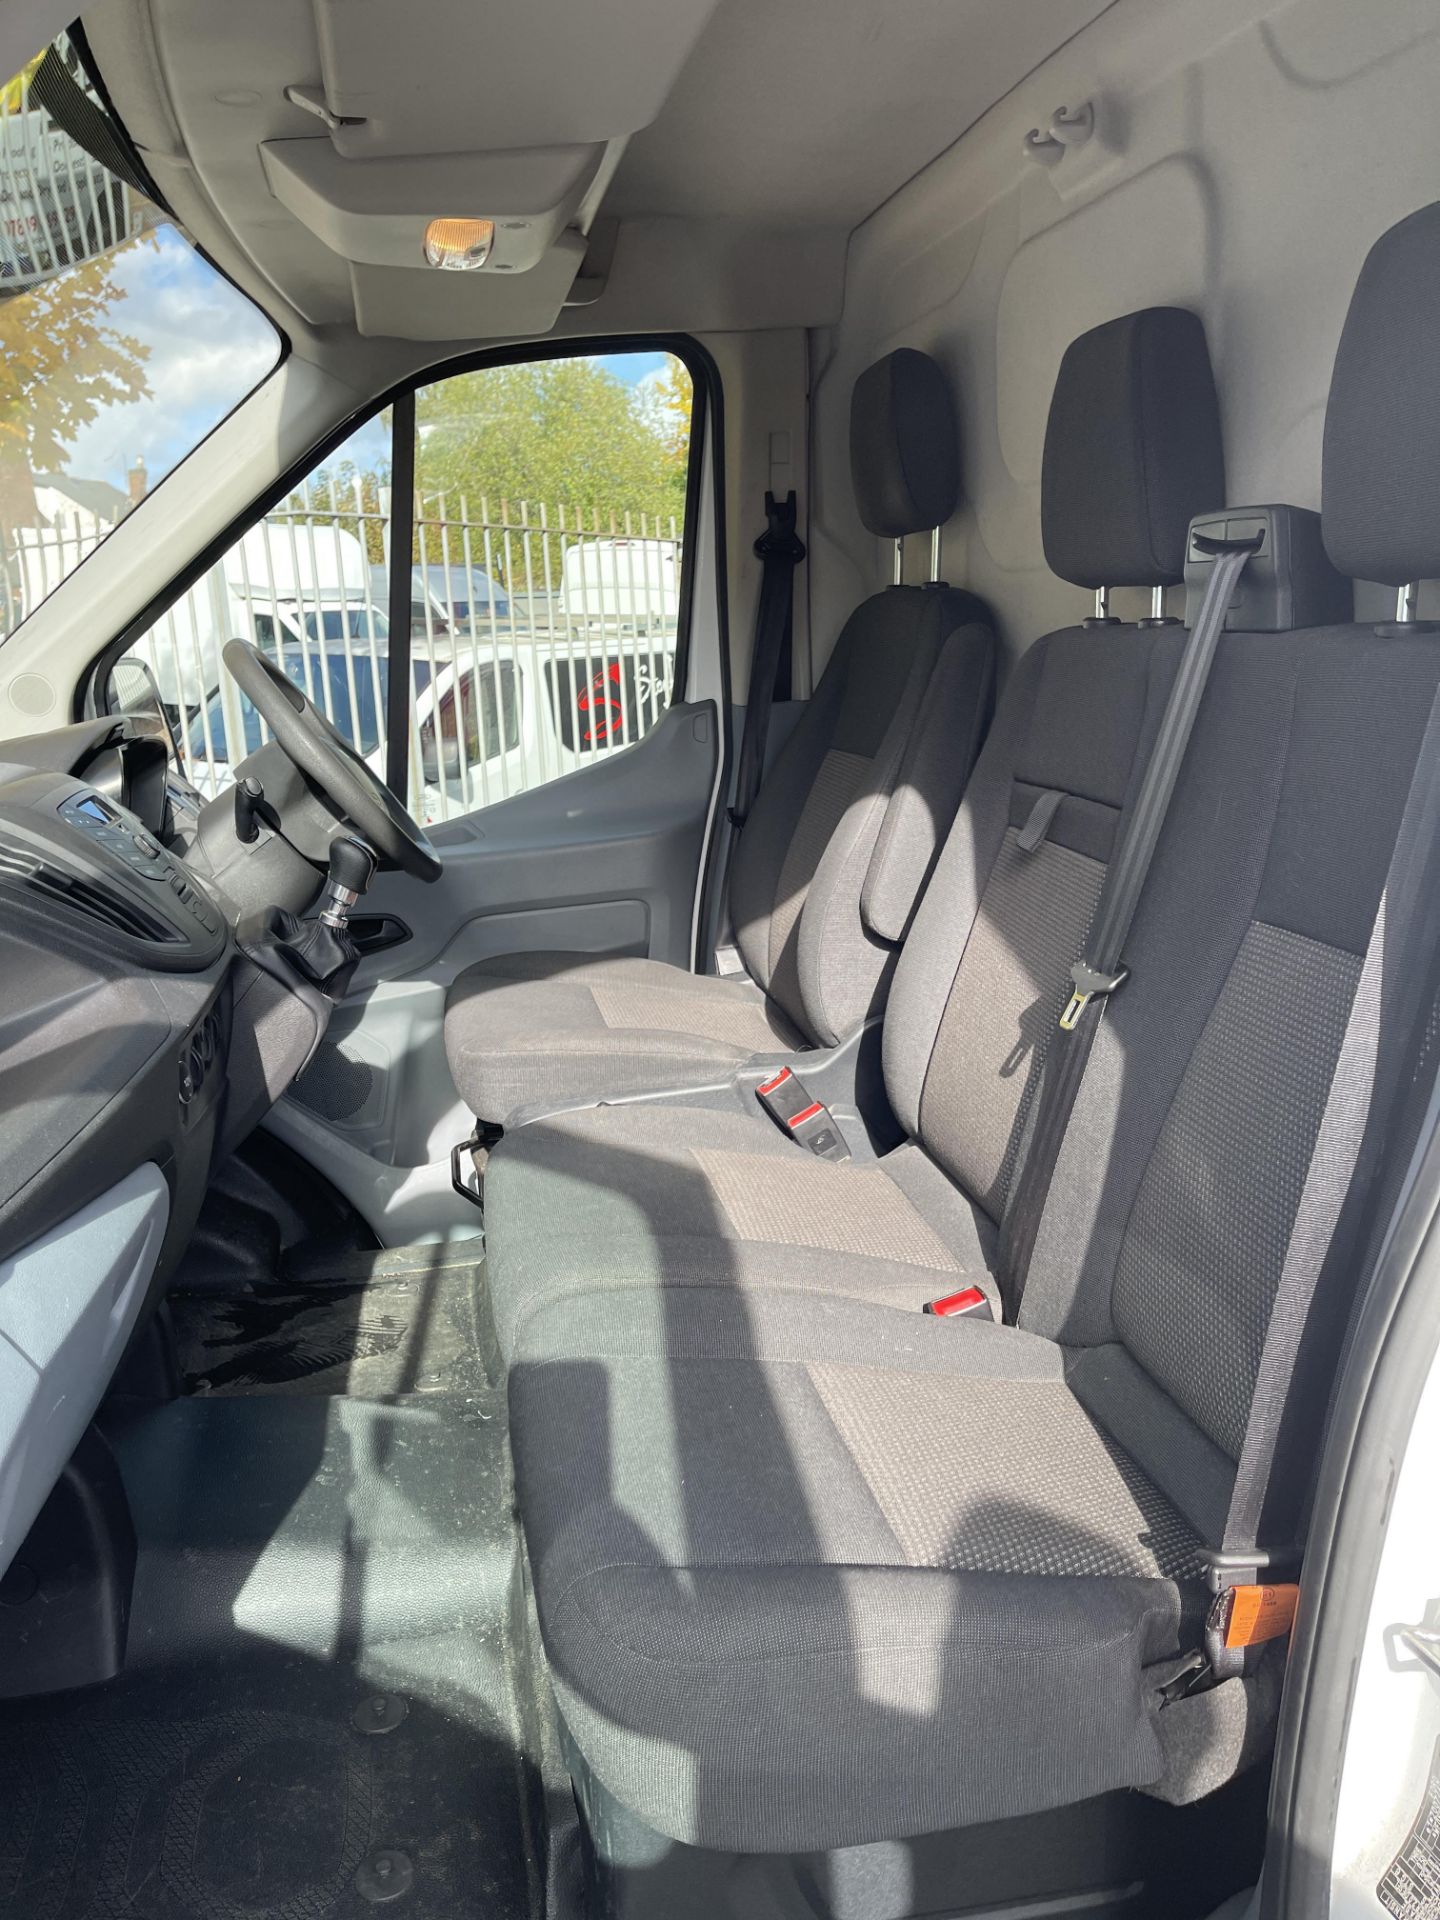 2018 - Ford Transit 350 L4 Diesel Panel Van - Image 35 of 46